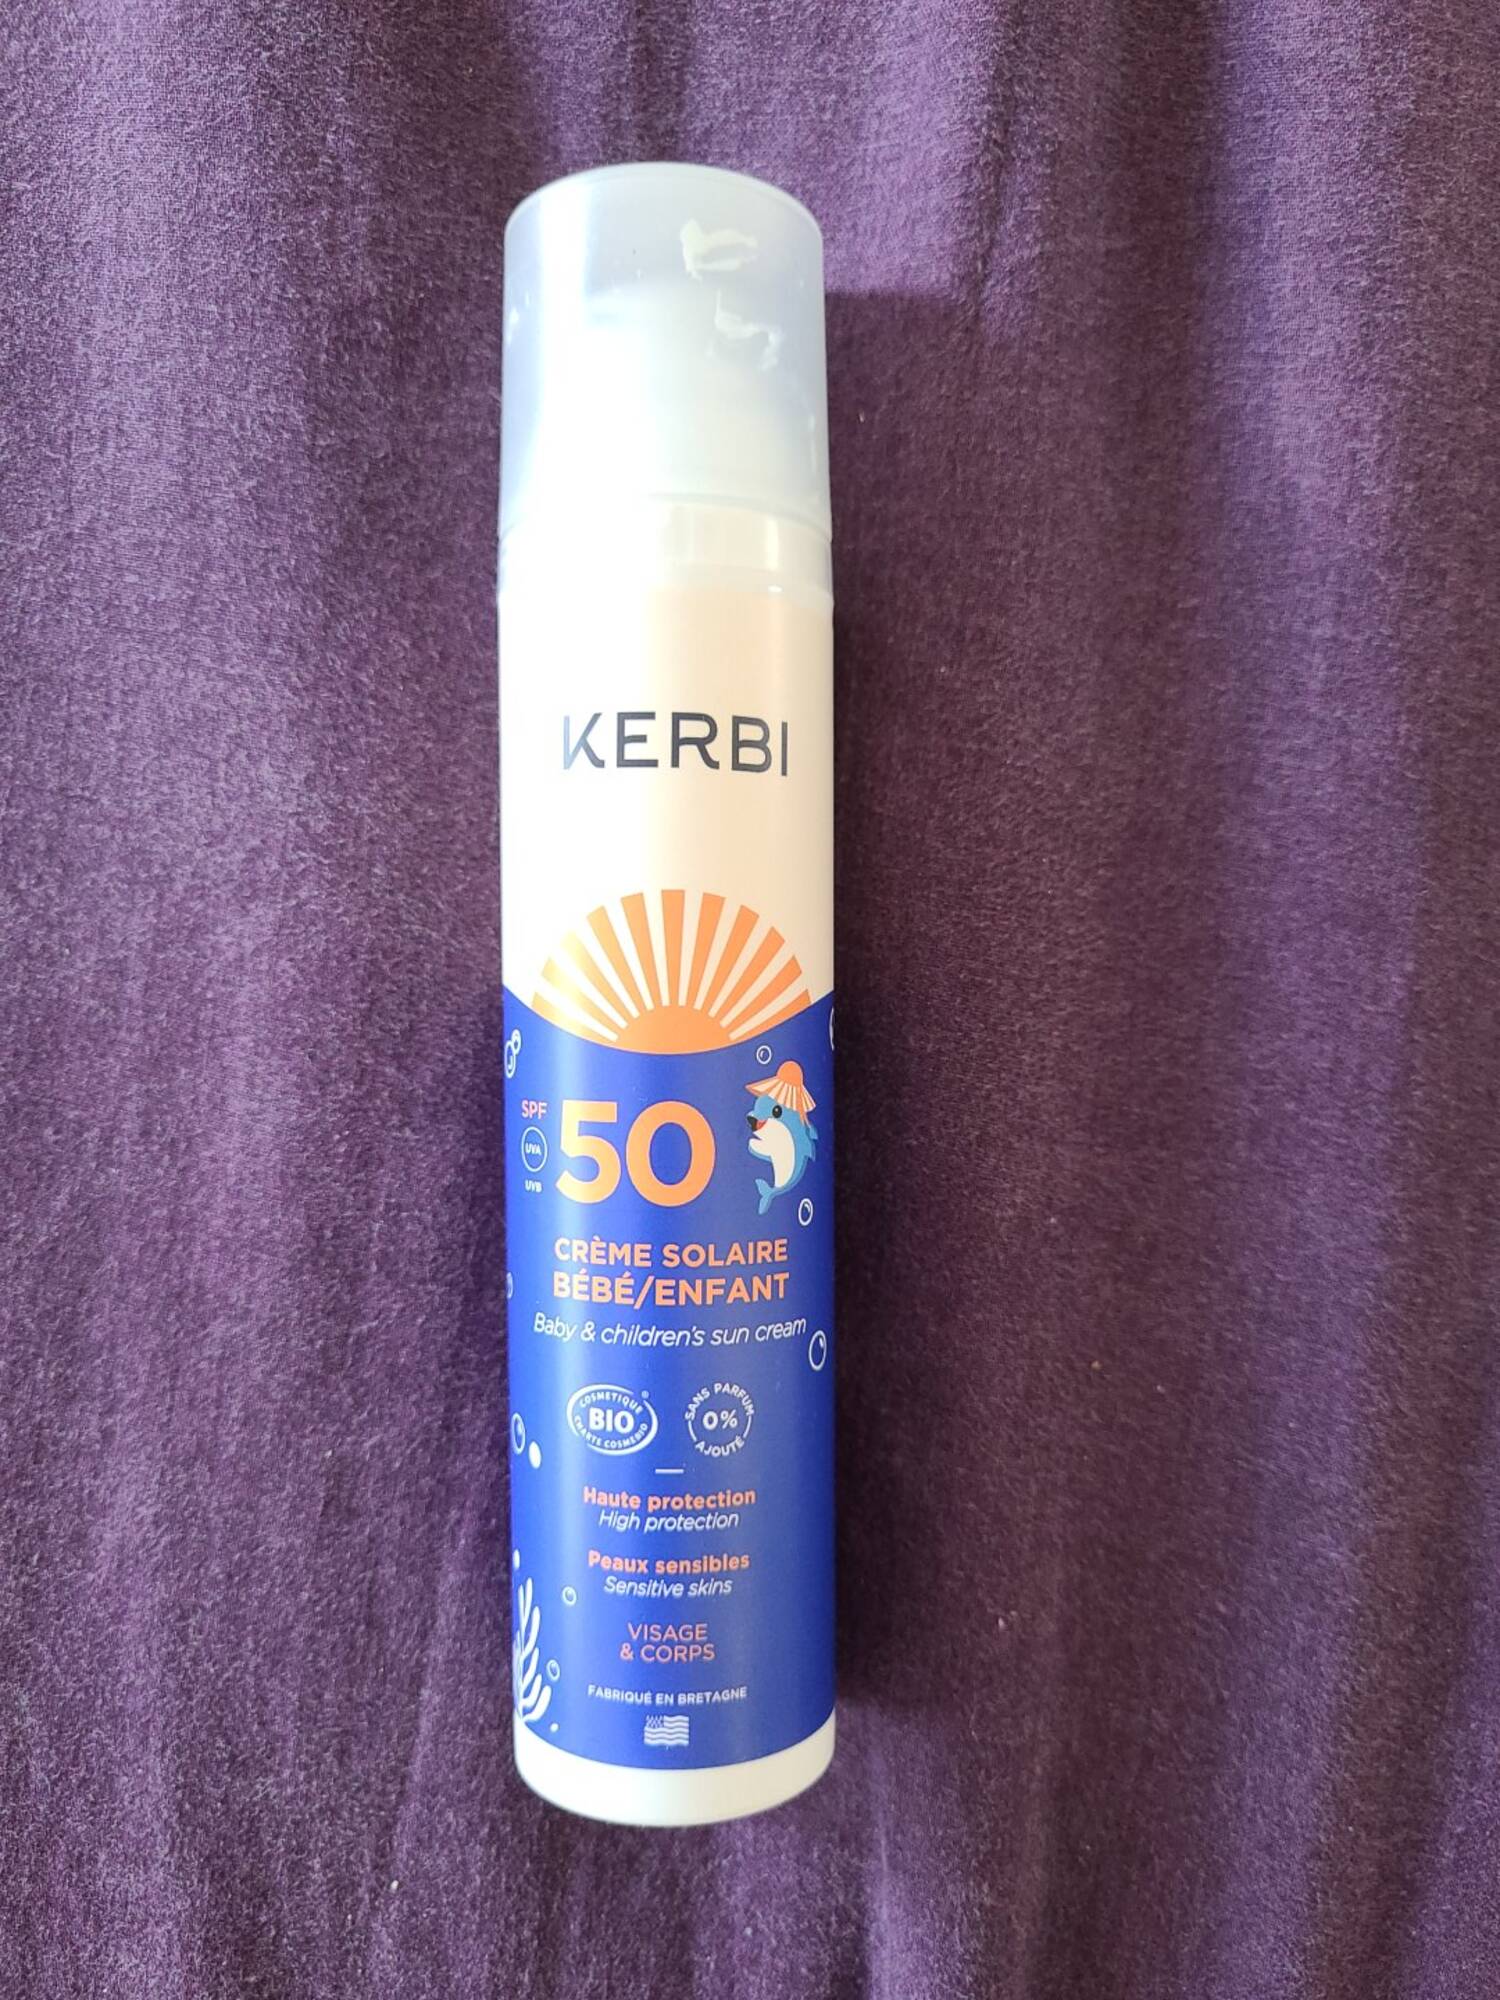 KERBI - Crème solaire bébé / enfant SPF 50